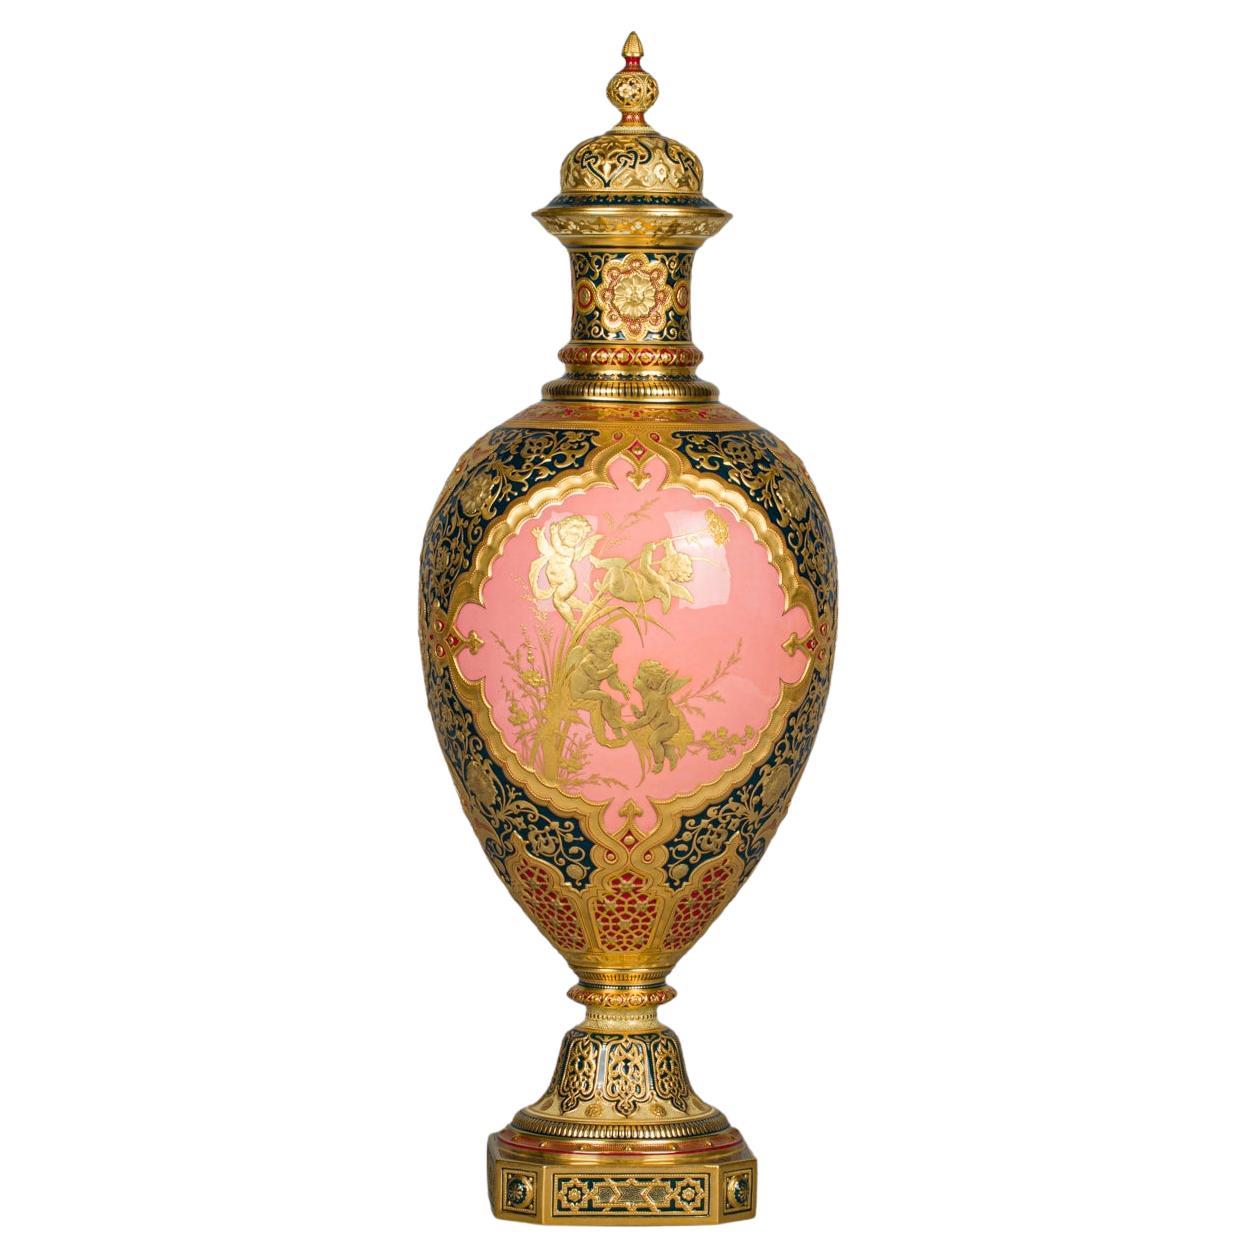 Urne recouverte de la couronne royale du Derby, 19ème siècle